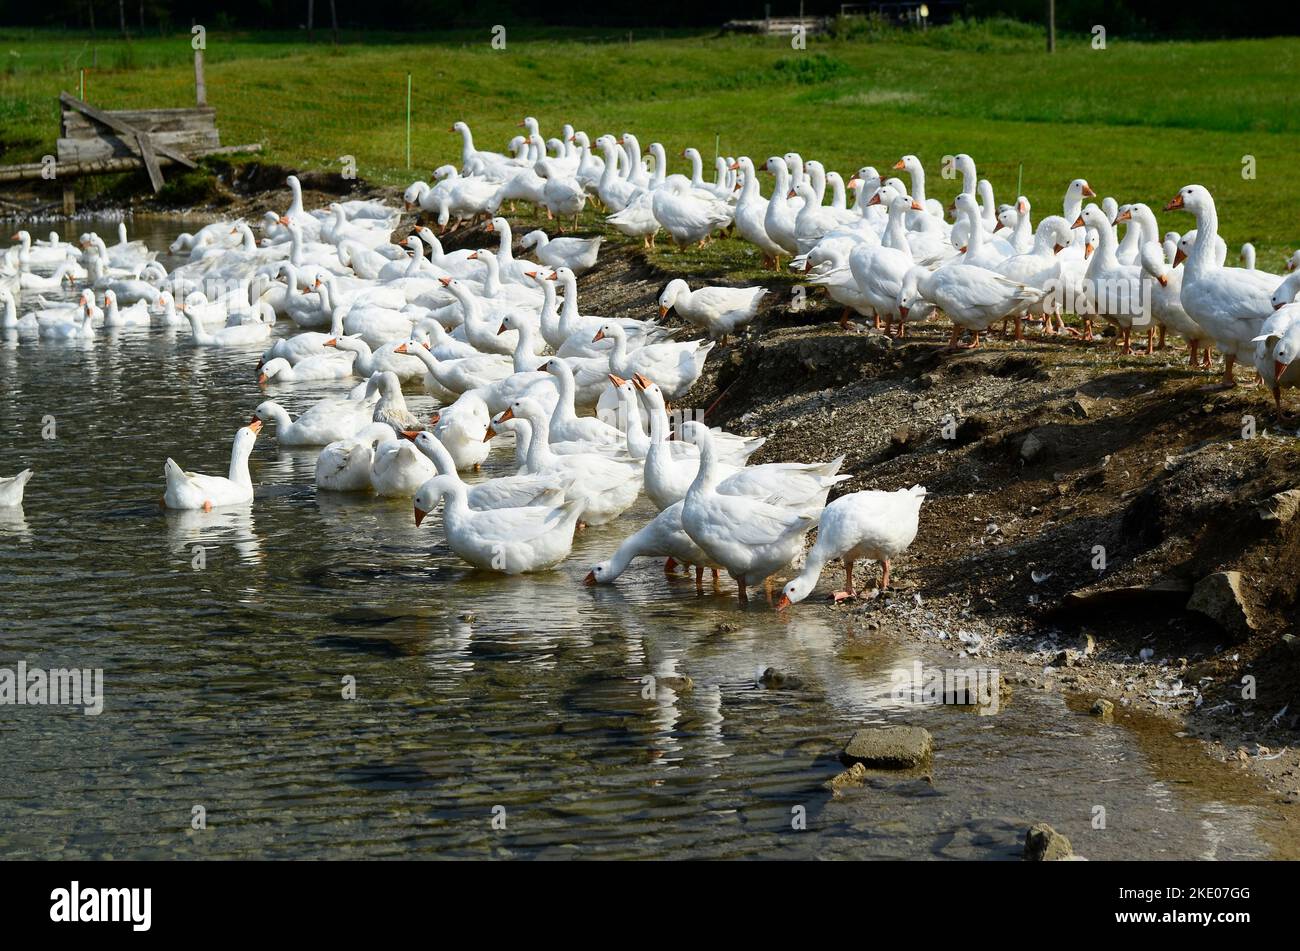 Austria, grupo grande de gansos blancos en el pasto Foto de stock